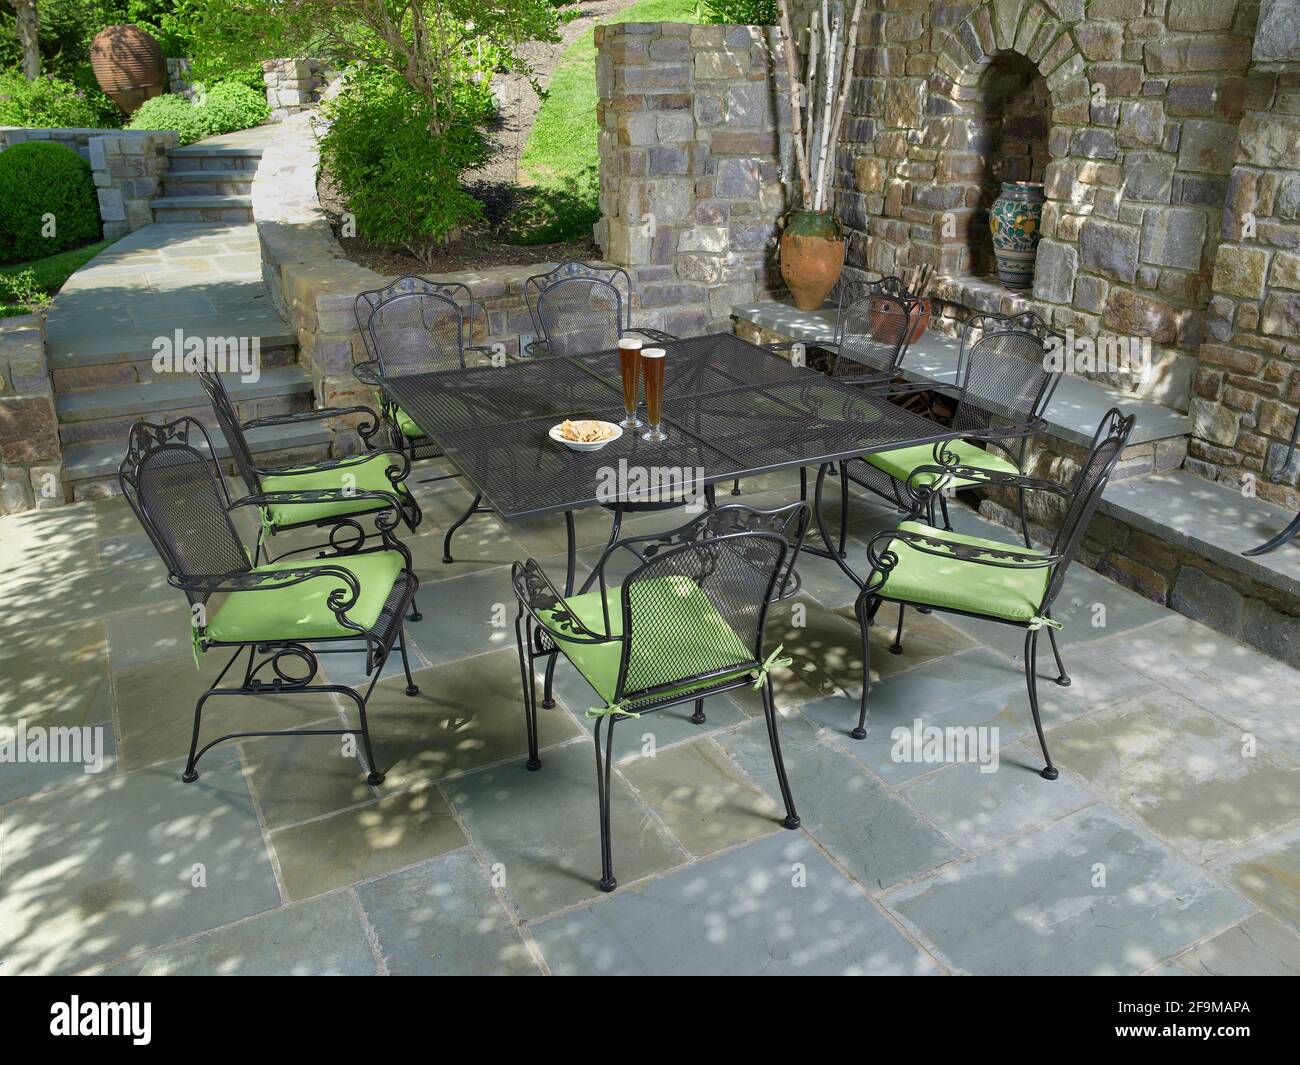 Gartenmöbel auf der Steinterrasse, Pennsylvania, USA Stockfotografie - Alamy